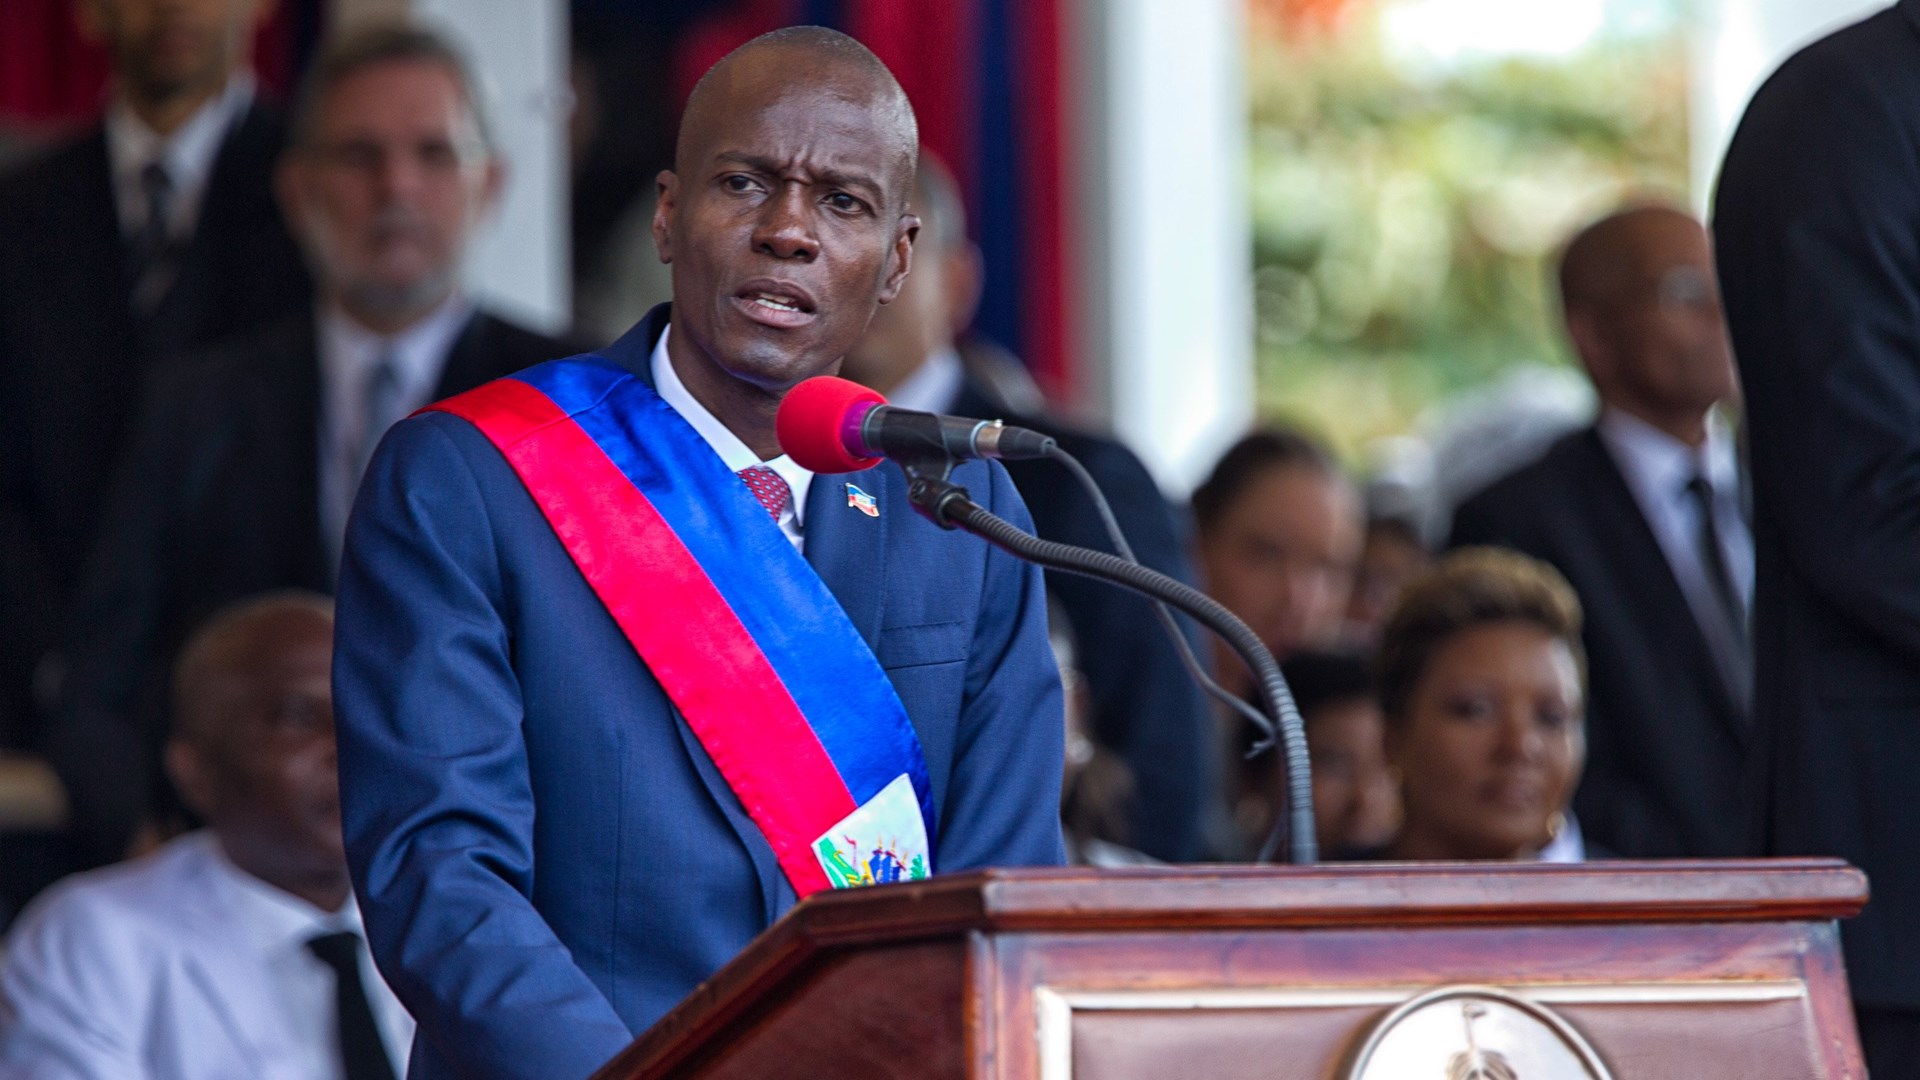 ΒΙΝΤΕΟ ντοκουμέντο από τη δολοφονία του προέδρου της Αϊτής – Σε “κατάσταση πολιορκίας” η χώρα